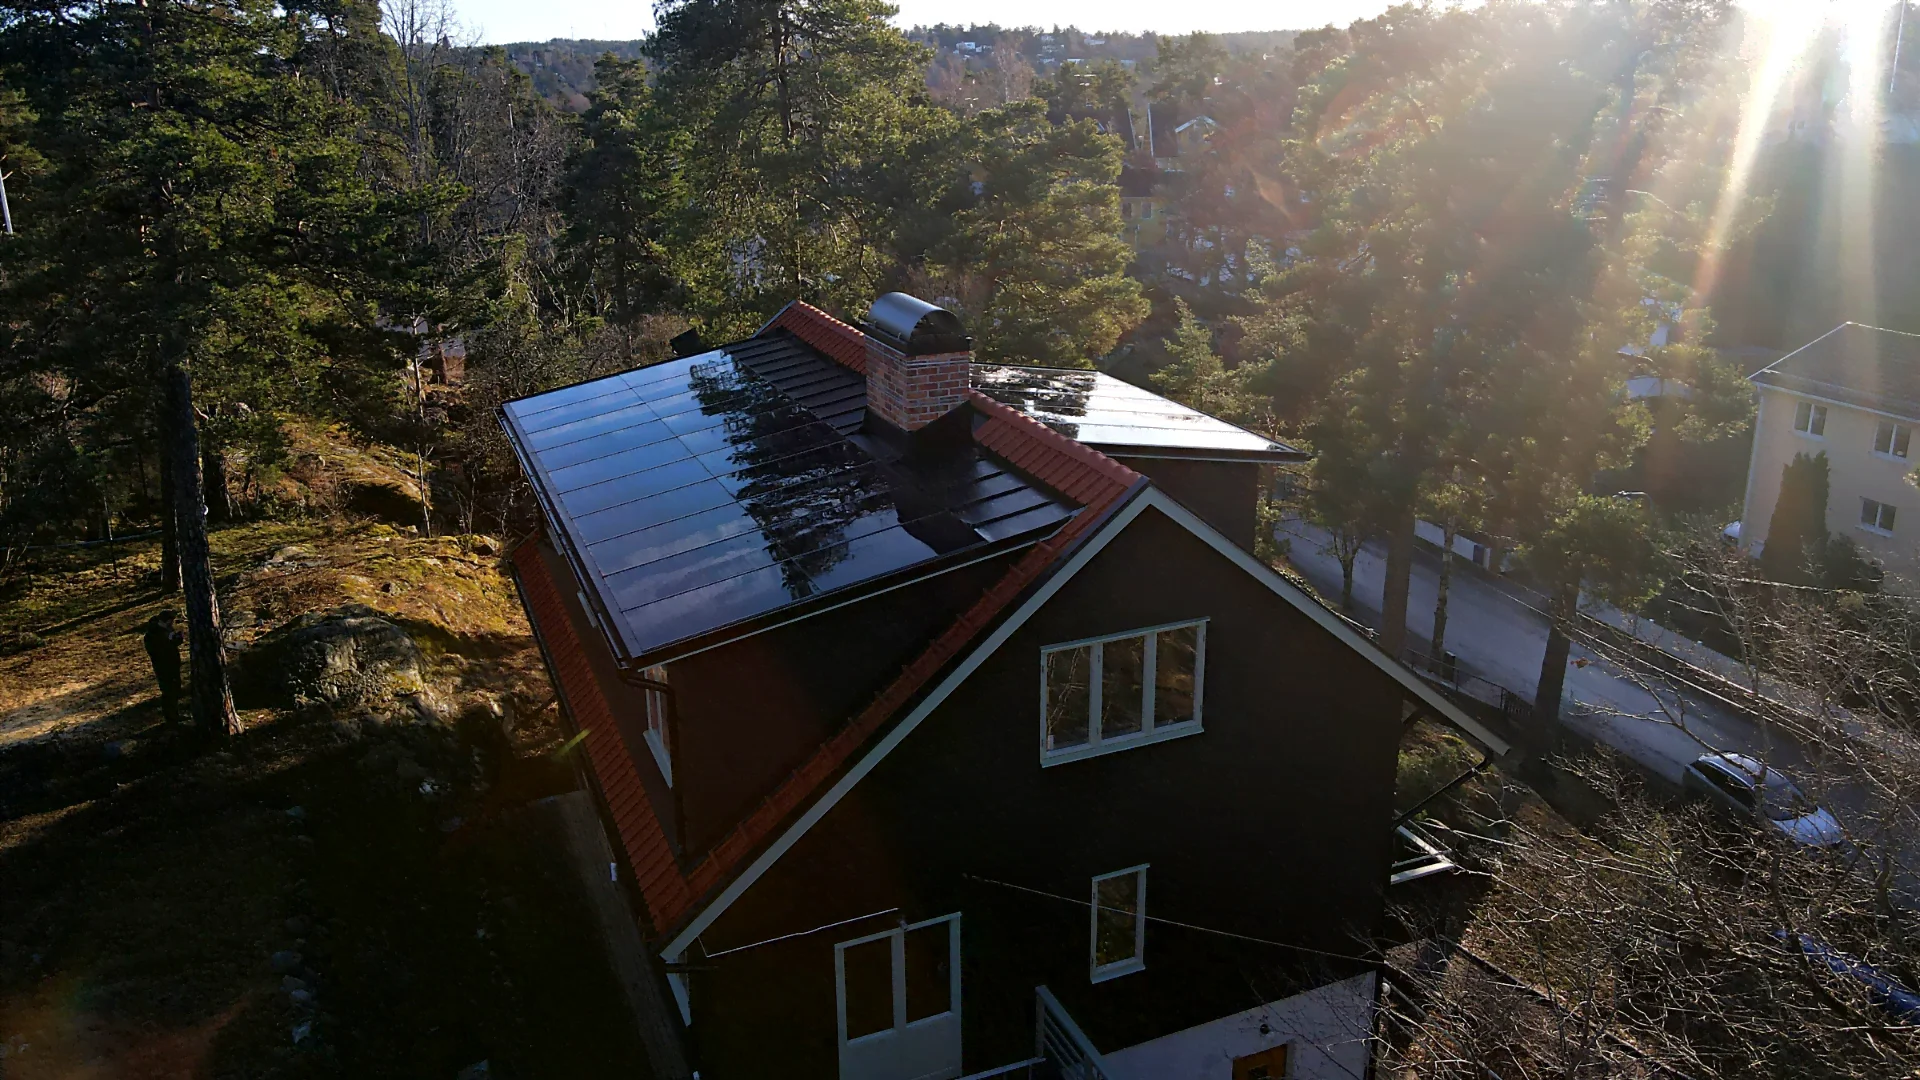 Solpaneler som tak kallas för soltak eller solcellstak. Välj ett soltak tidigt i din byggprocess när du ska bygga hus och få den snyggaste lösningen där ditt tak kan anpassas till solpanelernas mått.